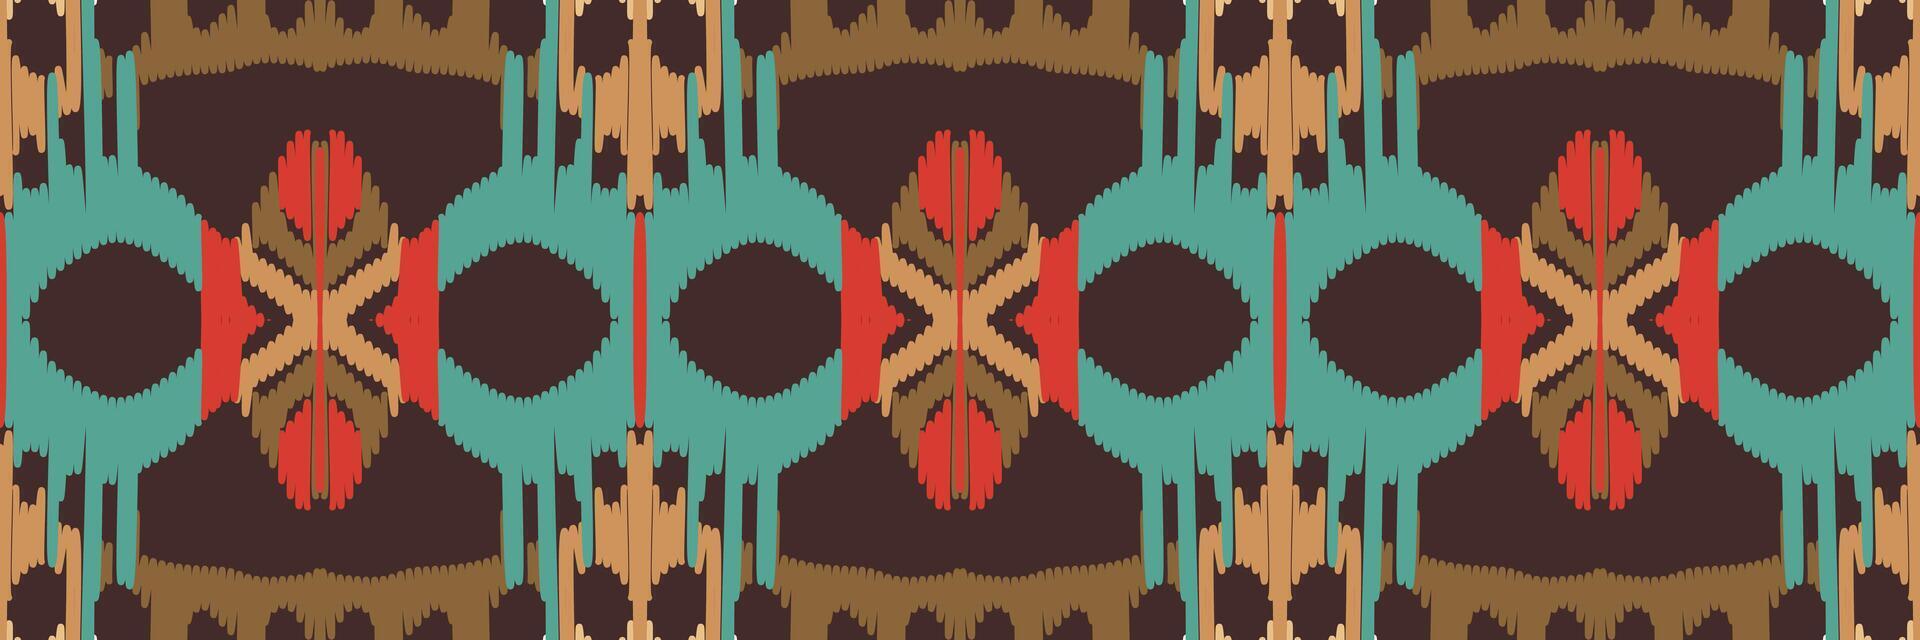 motif ethnique de broderie géométrique abstraite ikat. tapis en tissu aztèque ornement mandala chevron décoration textile papier peint. fond de vecteur traditionnel de dinde ethnique indigène boho tribal